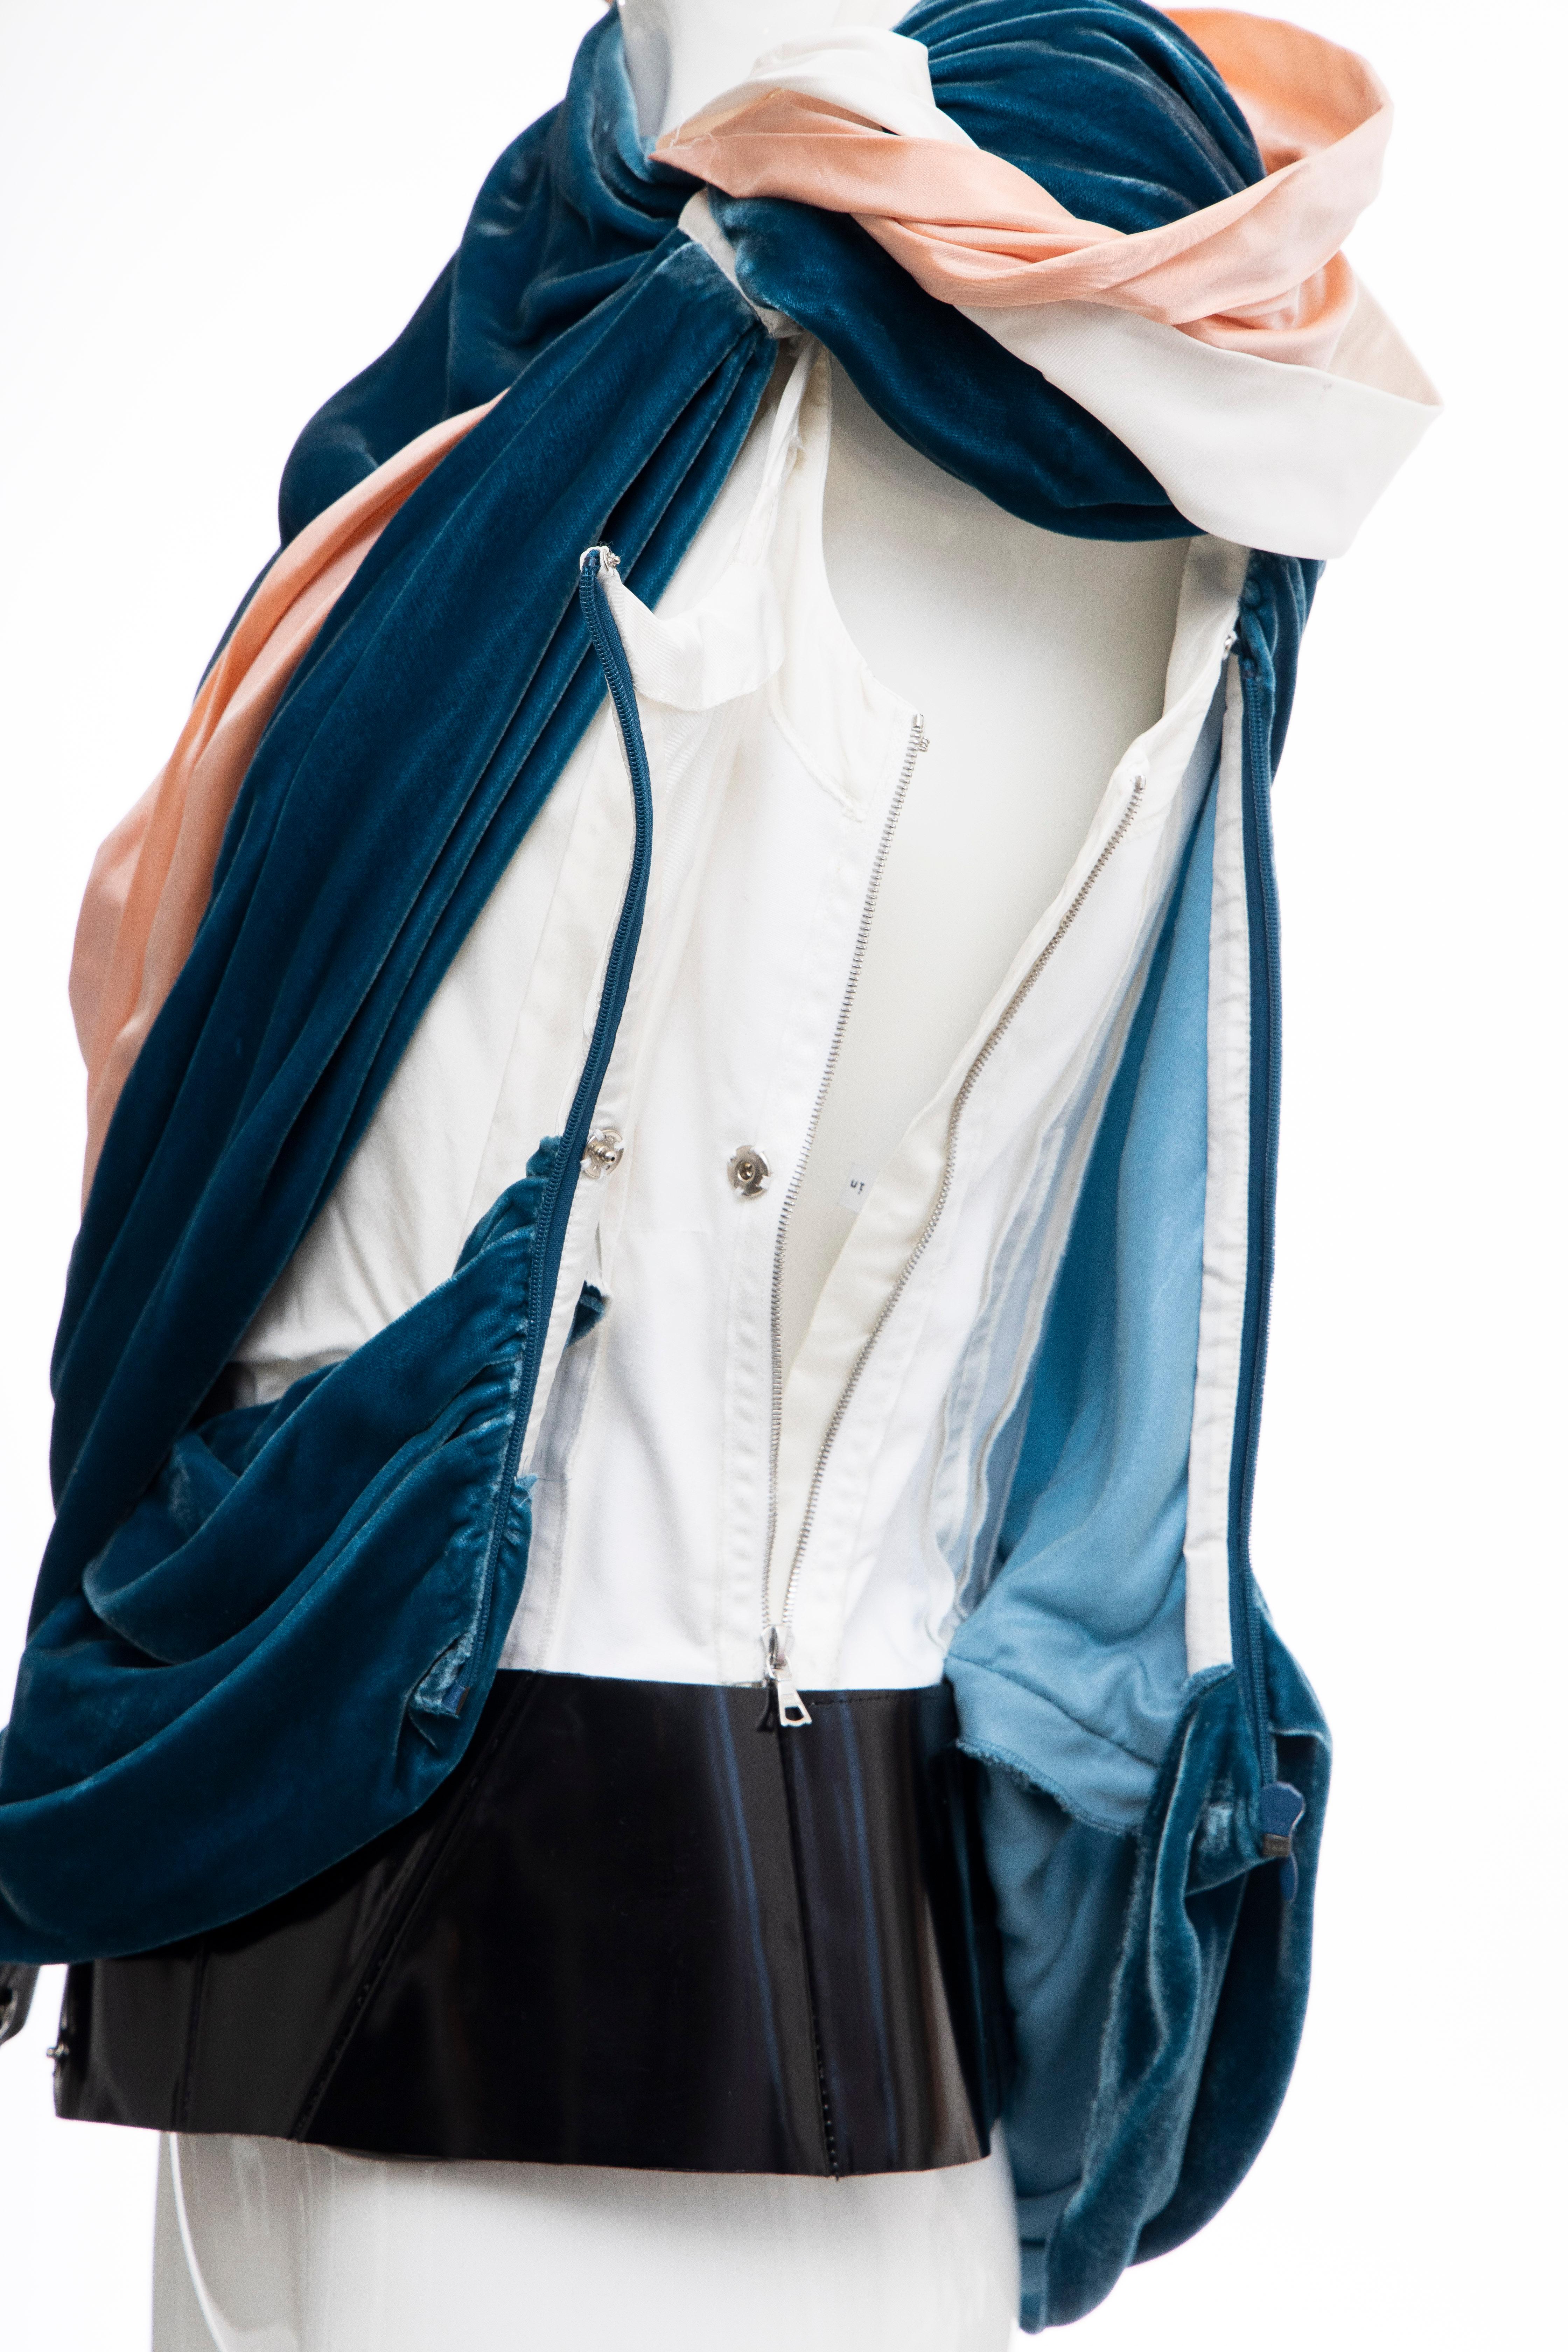 Nicolas Ghesquière for Balenciaga Runway Draped Silk Velvet Top , Fall 2008 For Sale 6